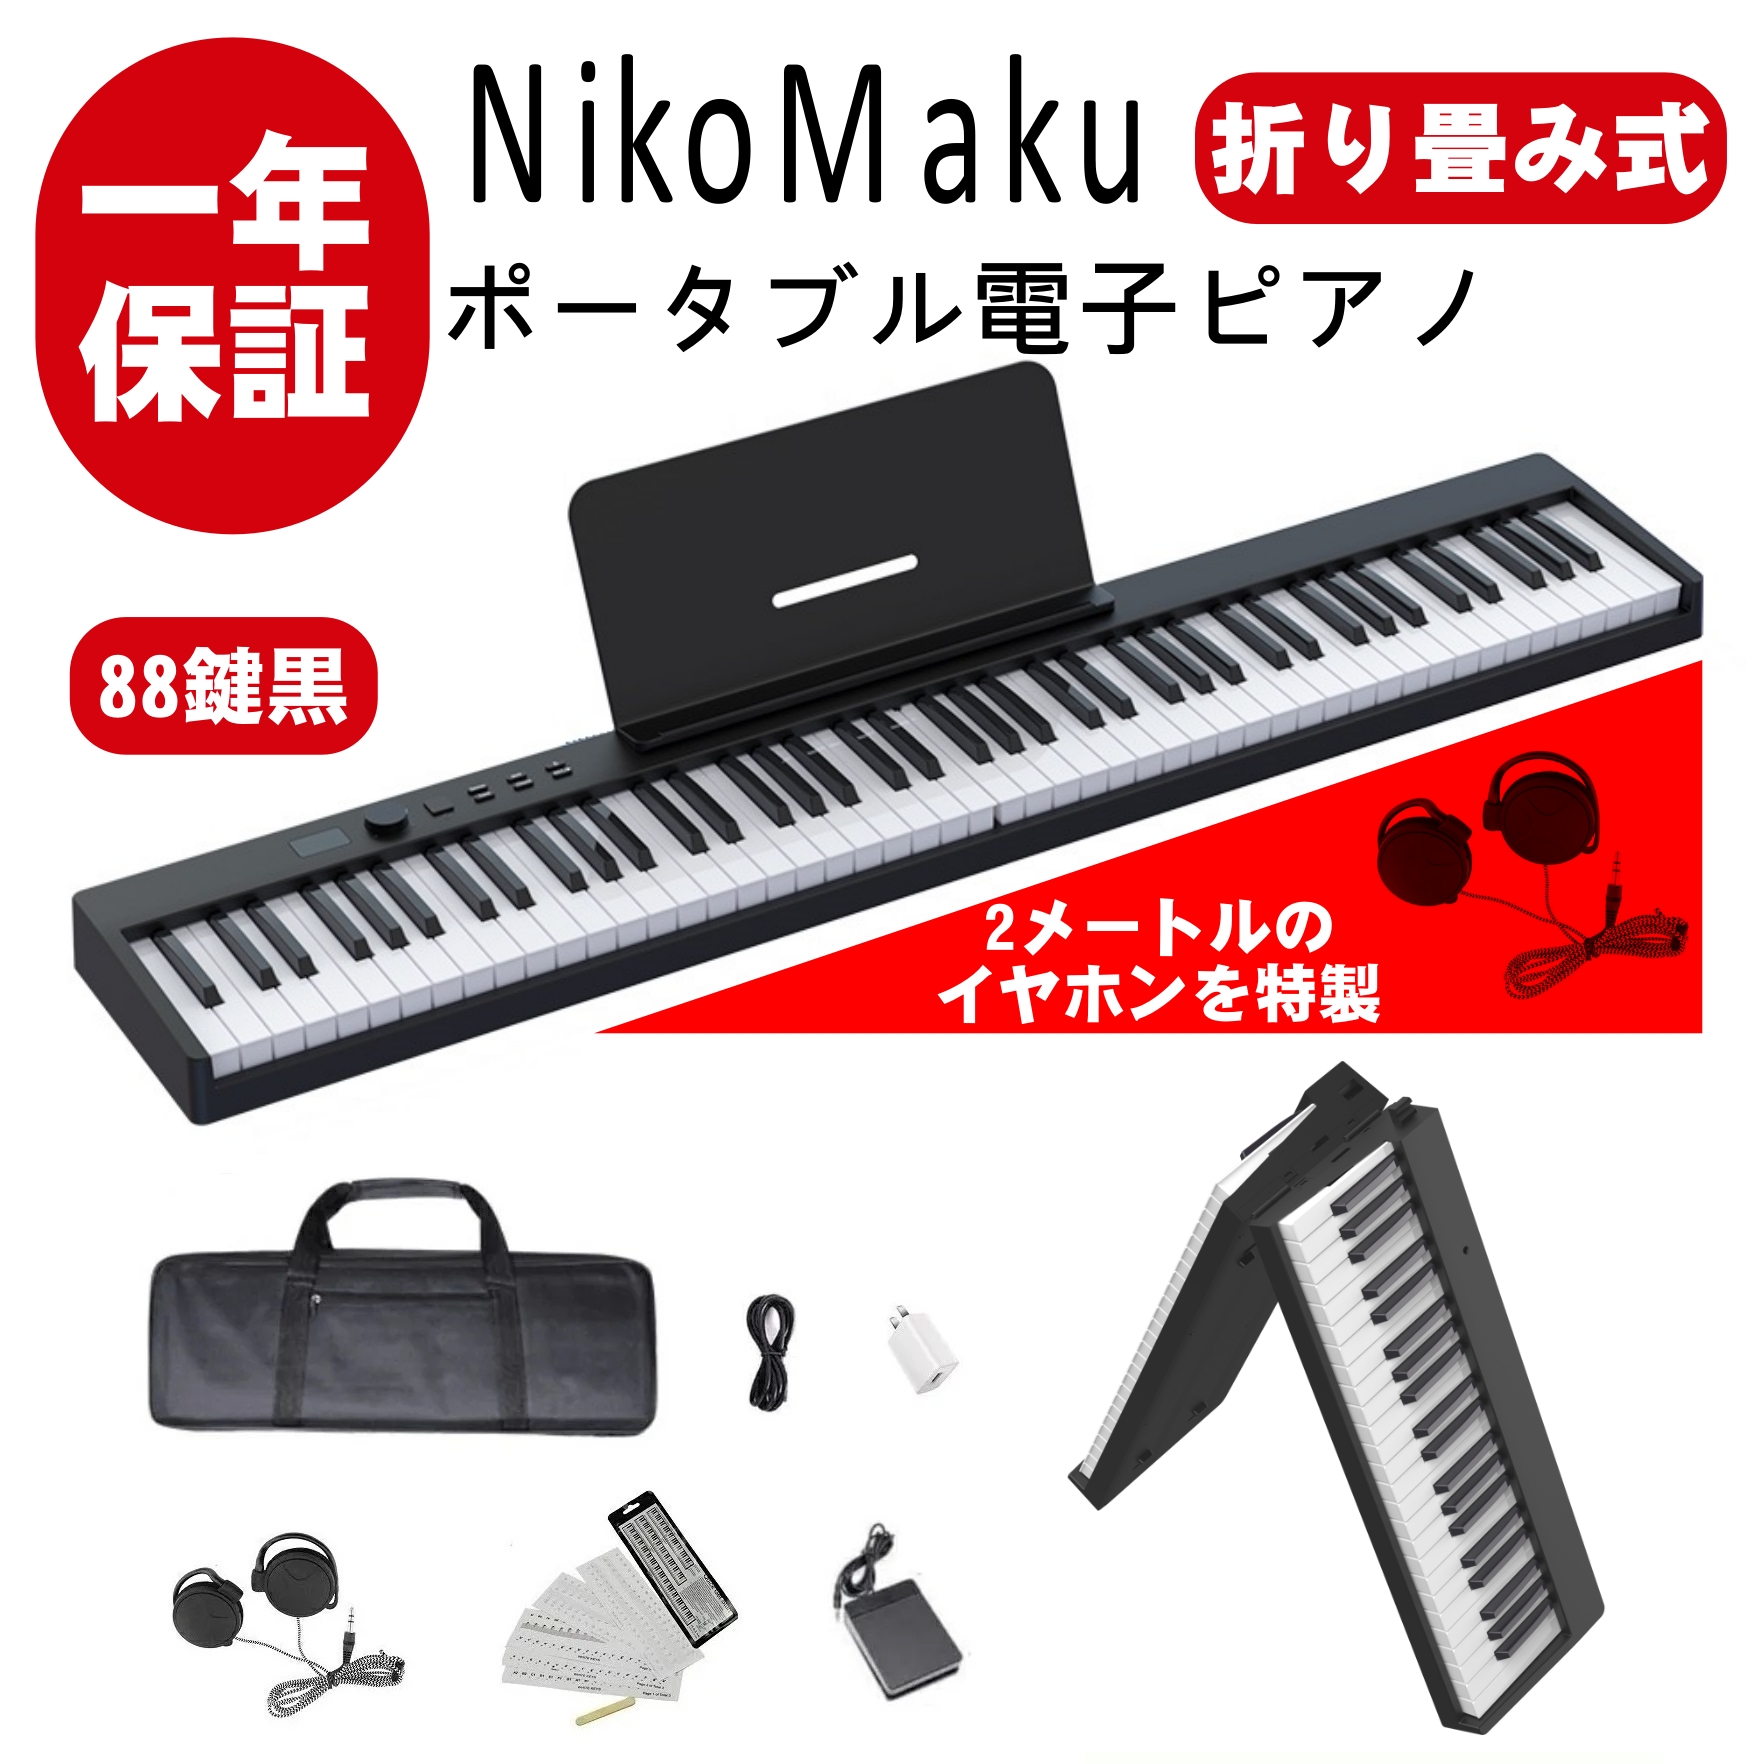 ショップ格安 電子ピアノ ニコマク 88鍵盤 白 折り畳み式 鍵盤楽器